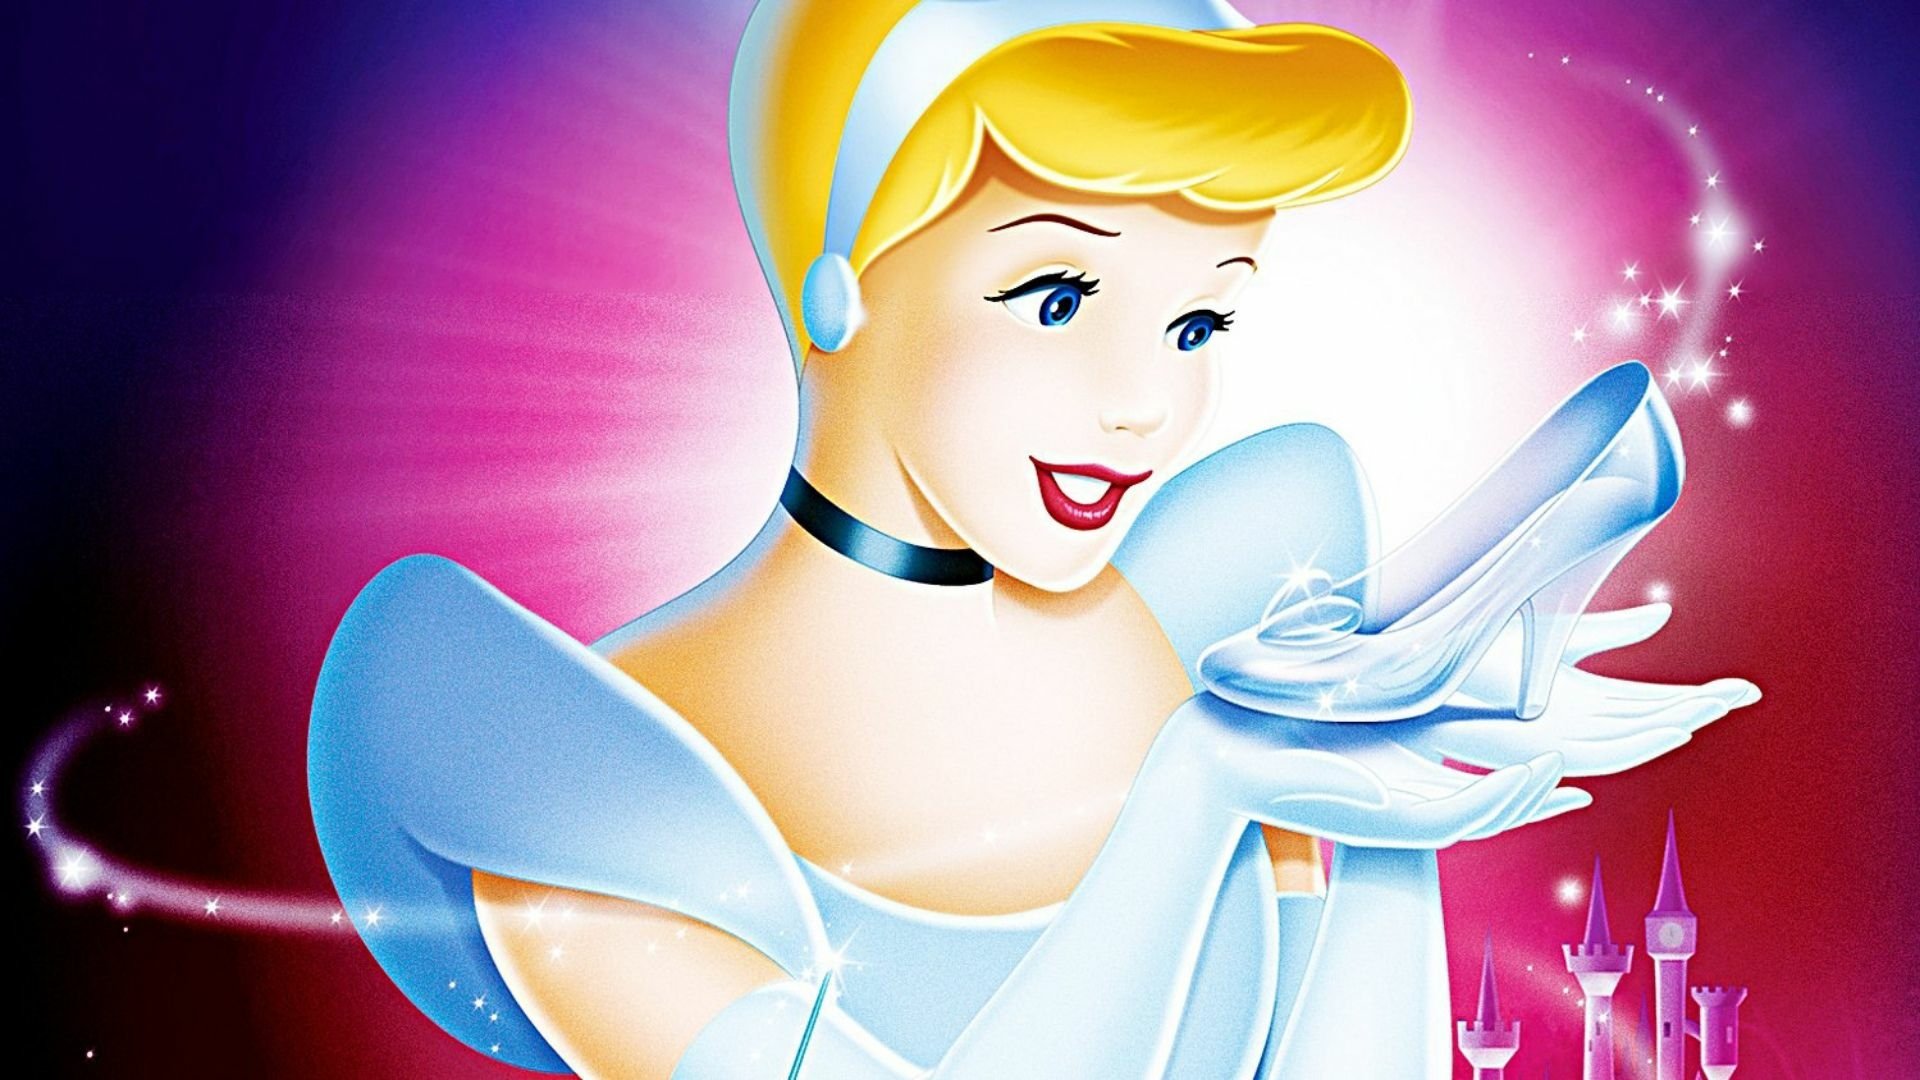 Baby Disney Princess Wallpapers - Top Những Hình Ảnh Đẹp